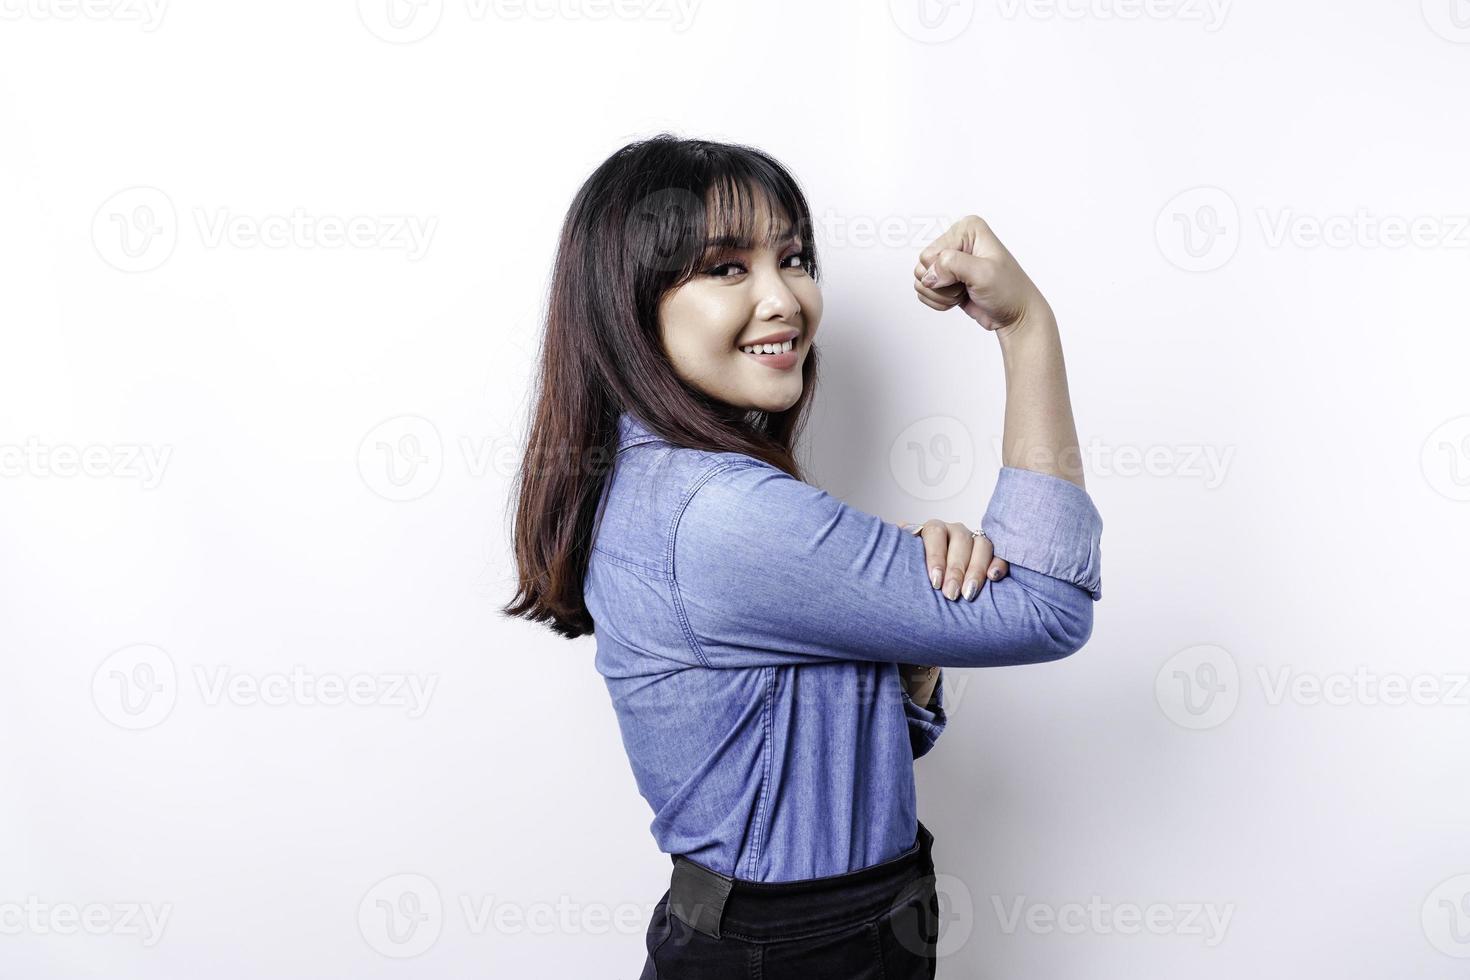 femme asiatique excitée portant une chemise bleue montrant un geste fort en levant les bras et les muscles en souriant fièrement photo